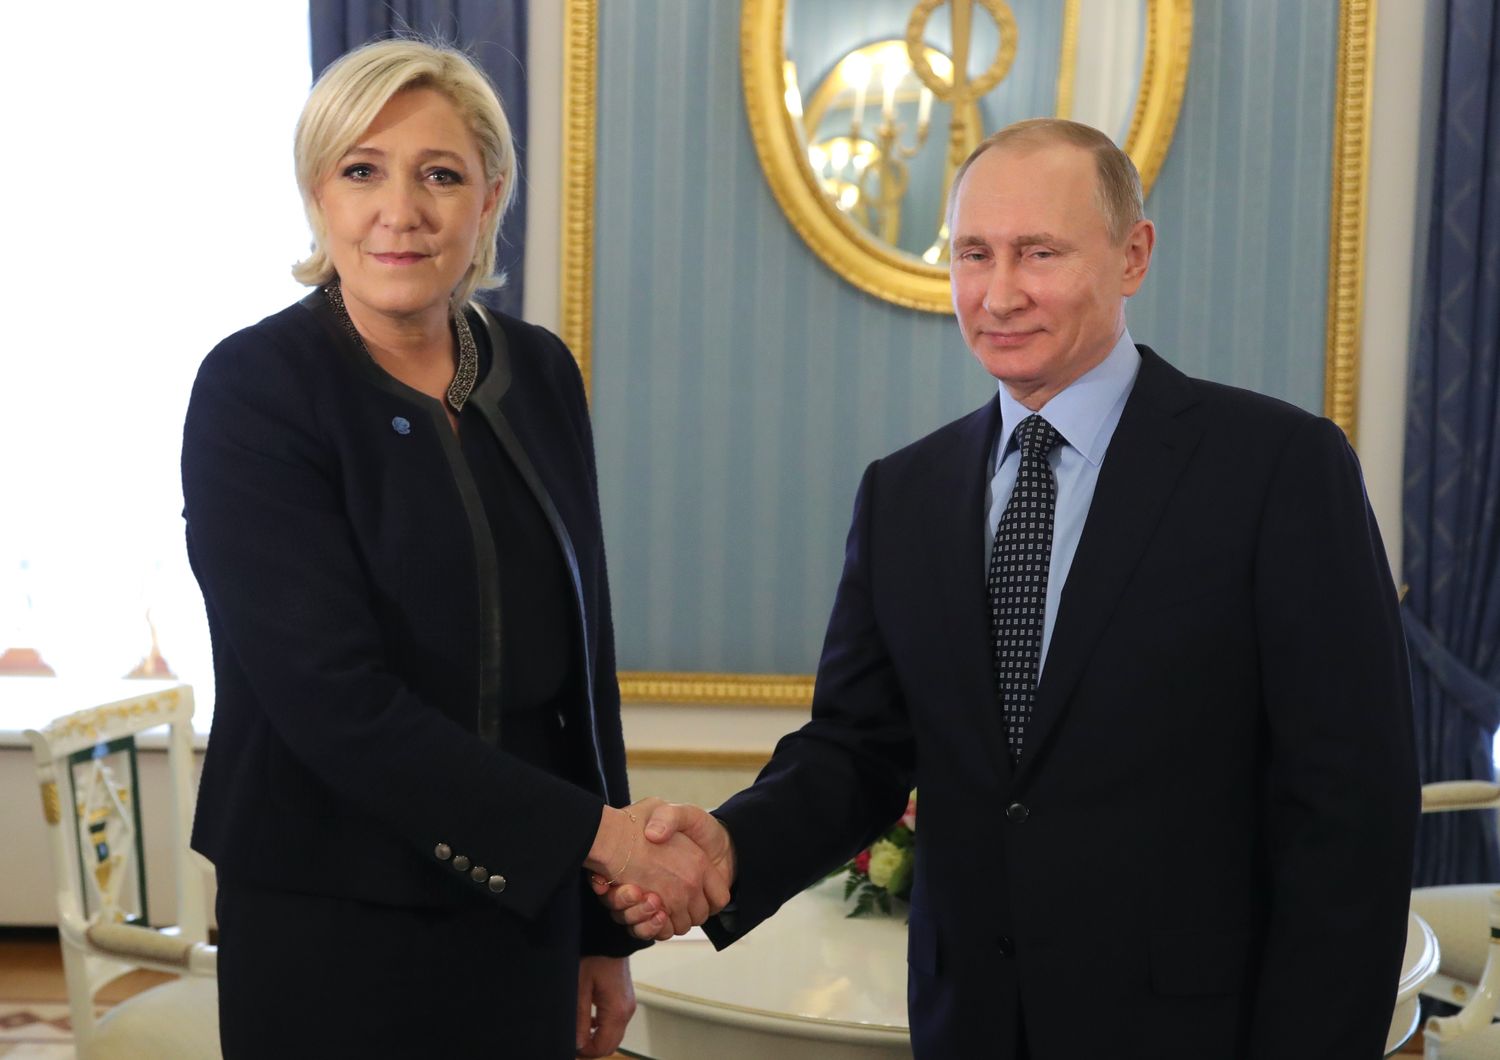 &nbsp;Putin Le Pen (Afp)